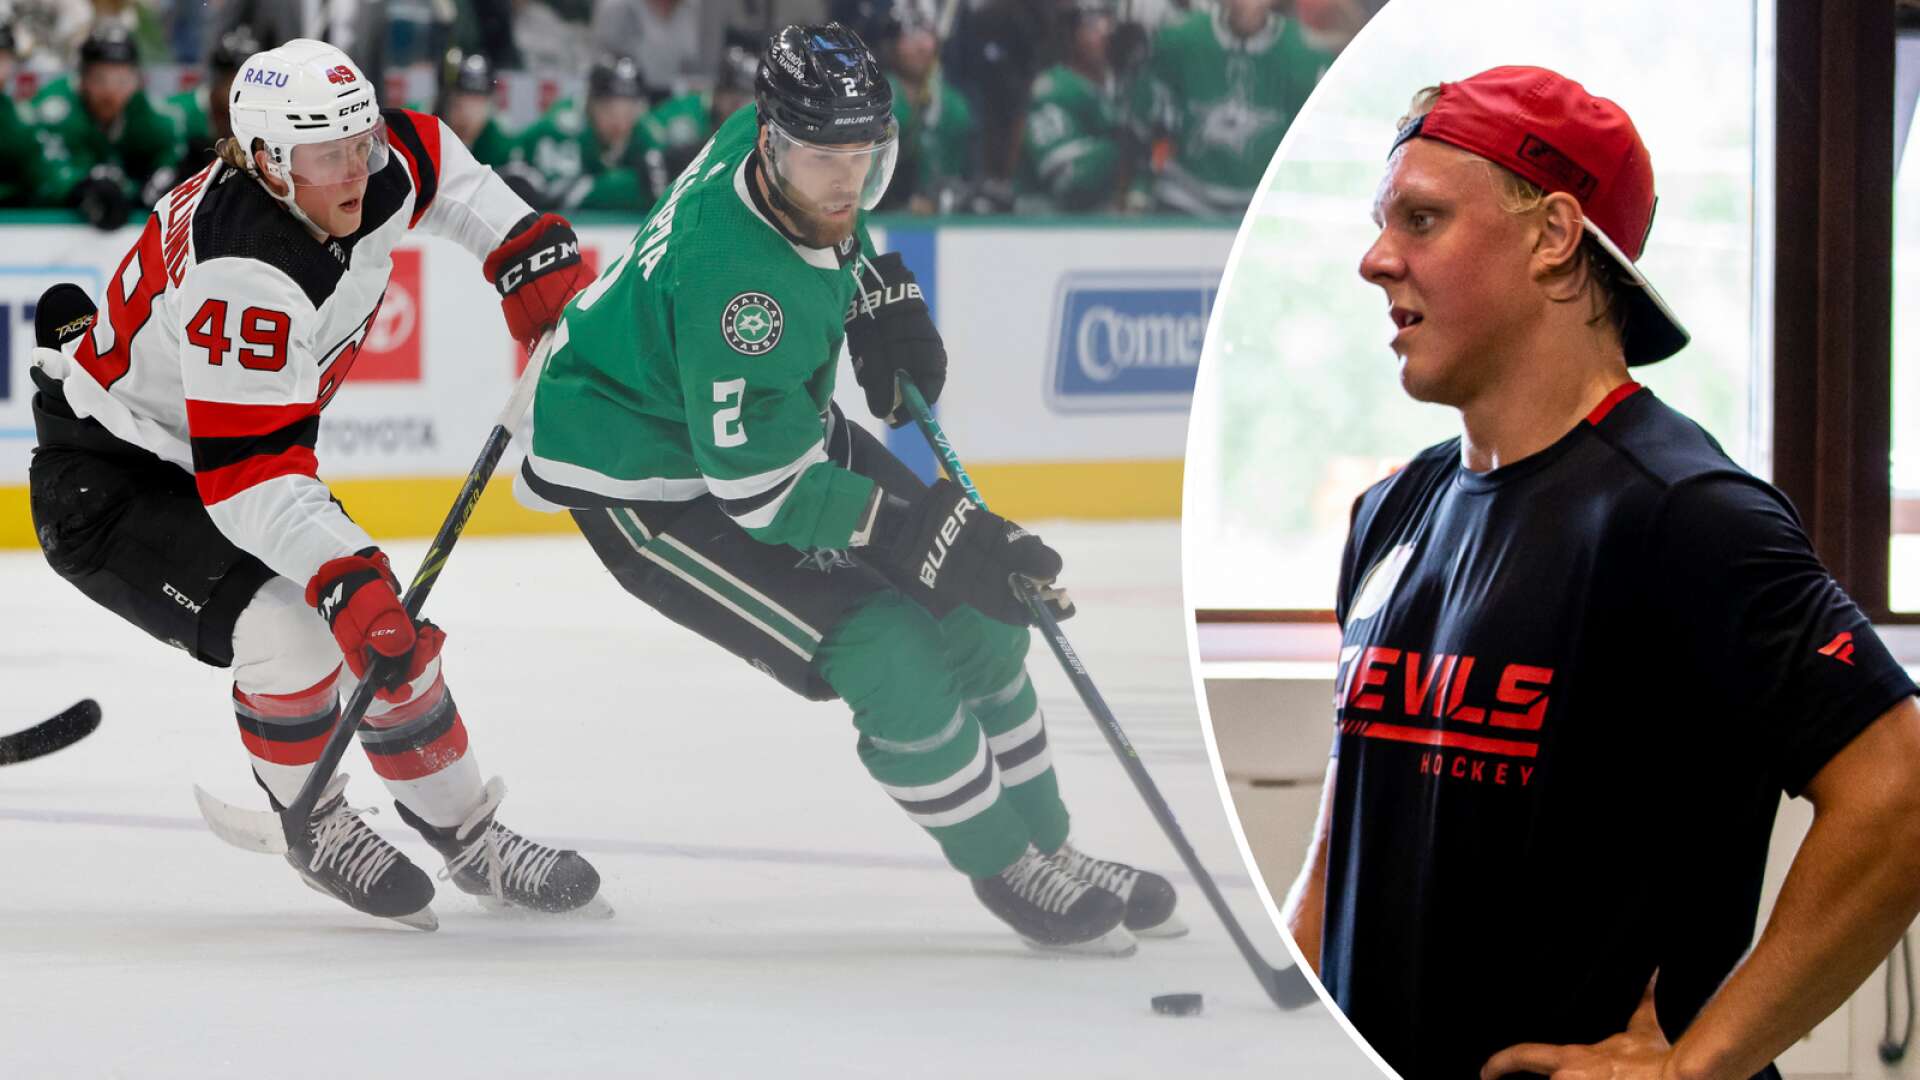 Från Norra Kroppkärr till NHL – många följer Zetterlunds resa